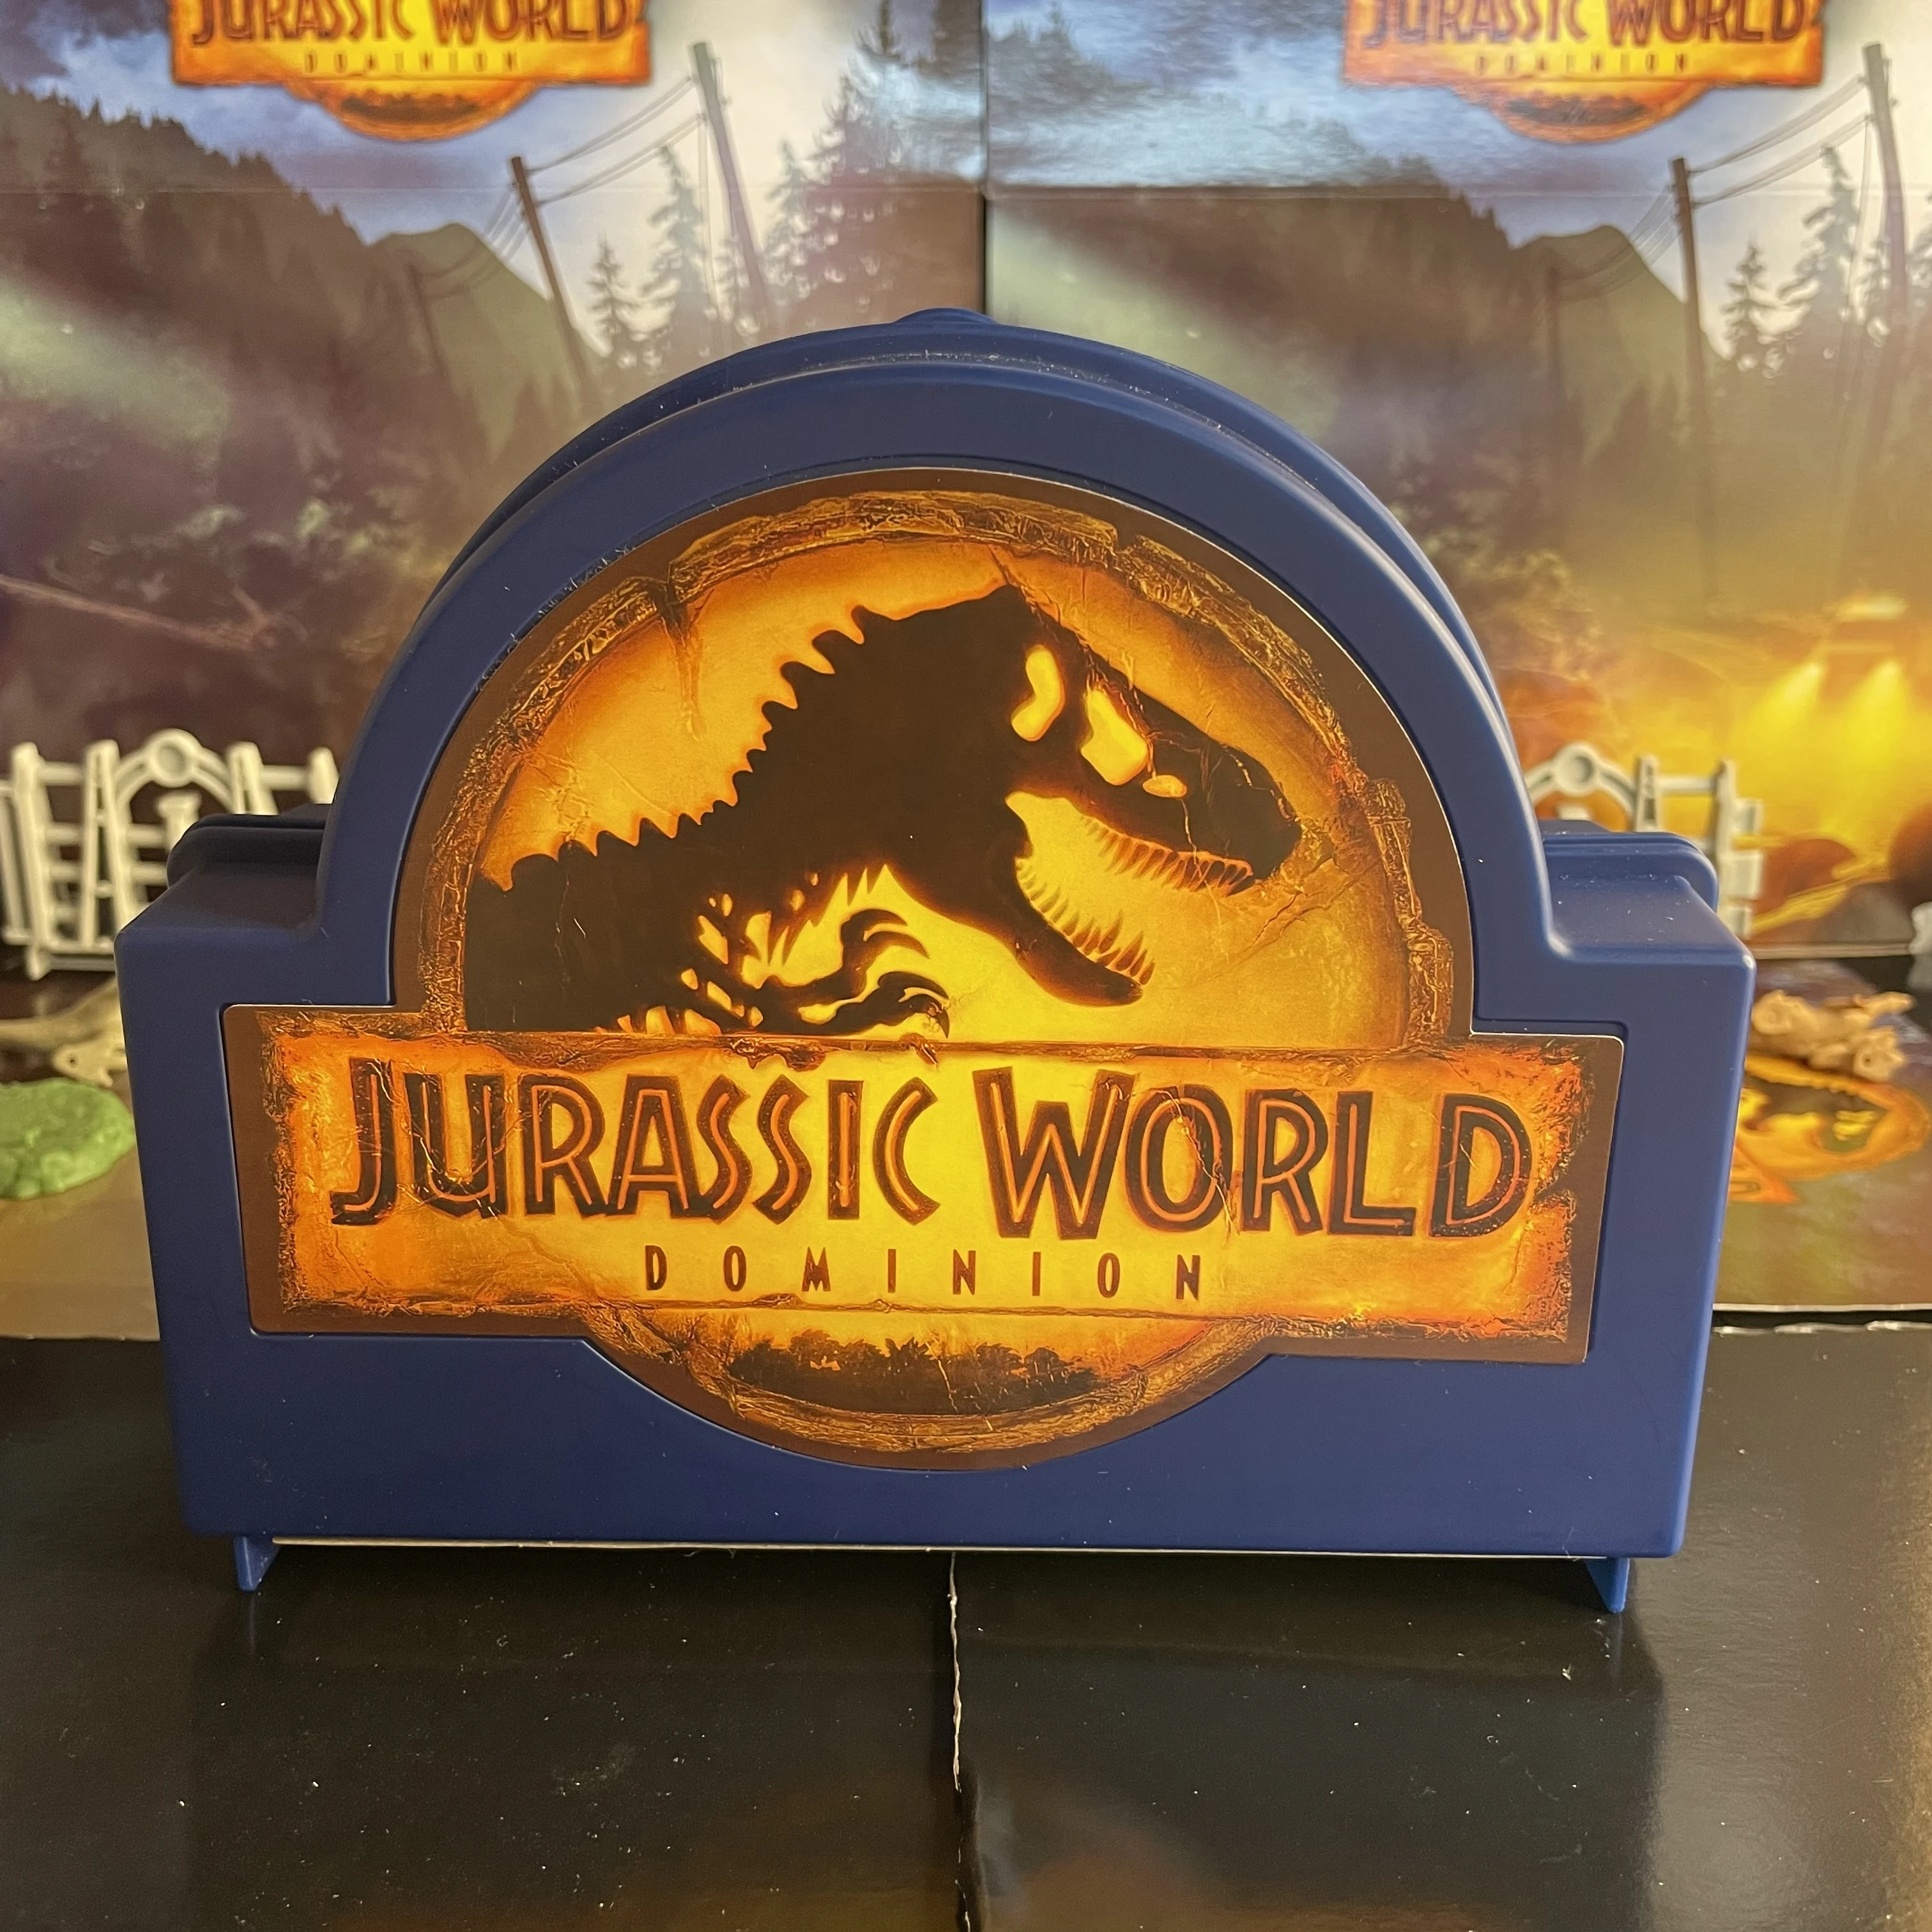 Conjunto de Mini Dinossauros – Jurassic World – Dominion